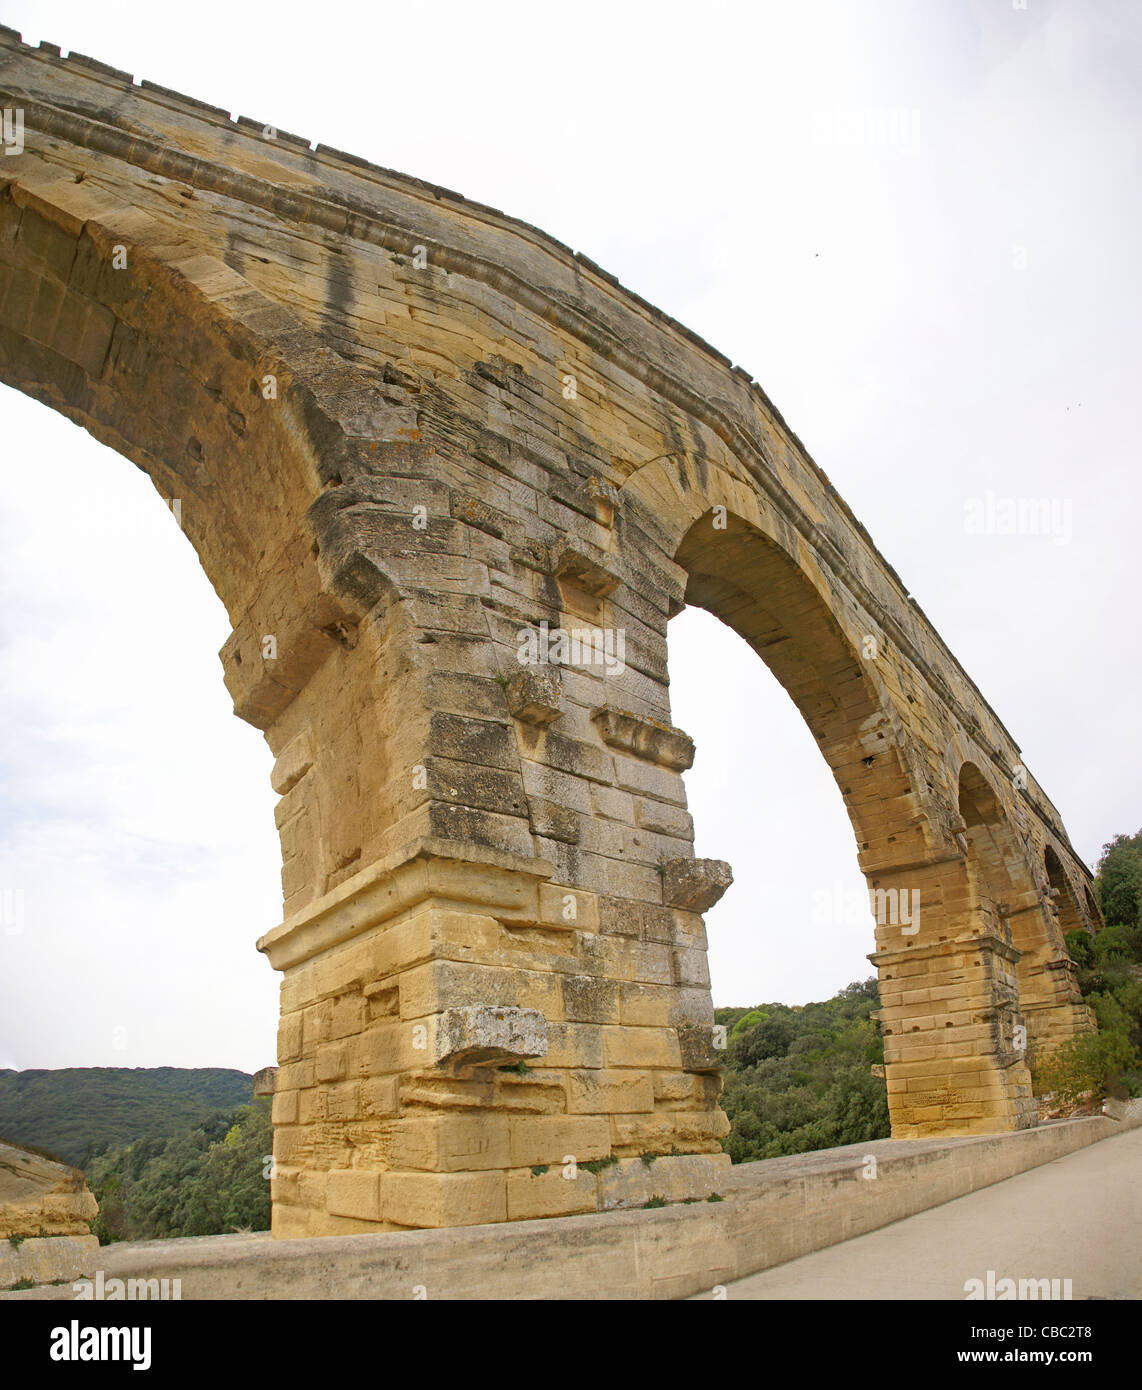 Pont du Gard Roman aqueduct  and bridge, Pont du Gard, France Stock Photo